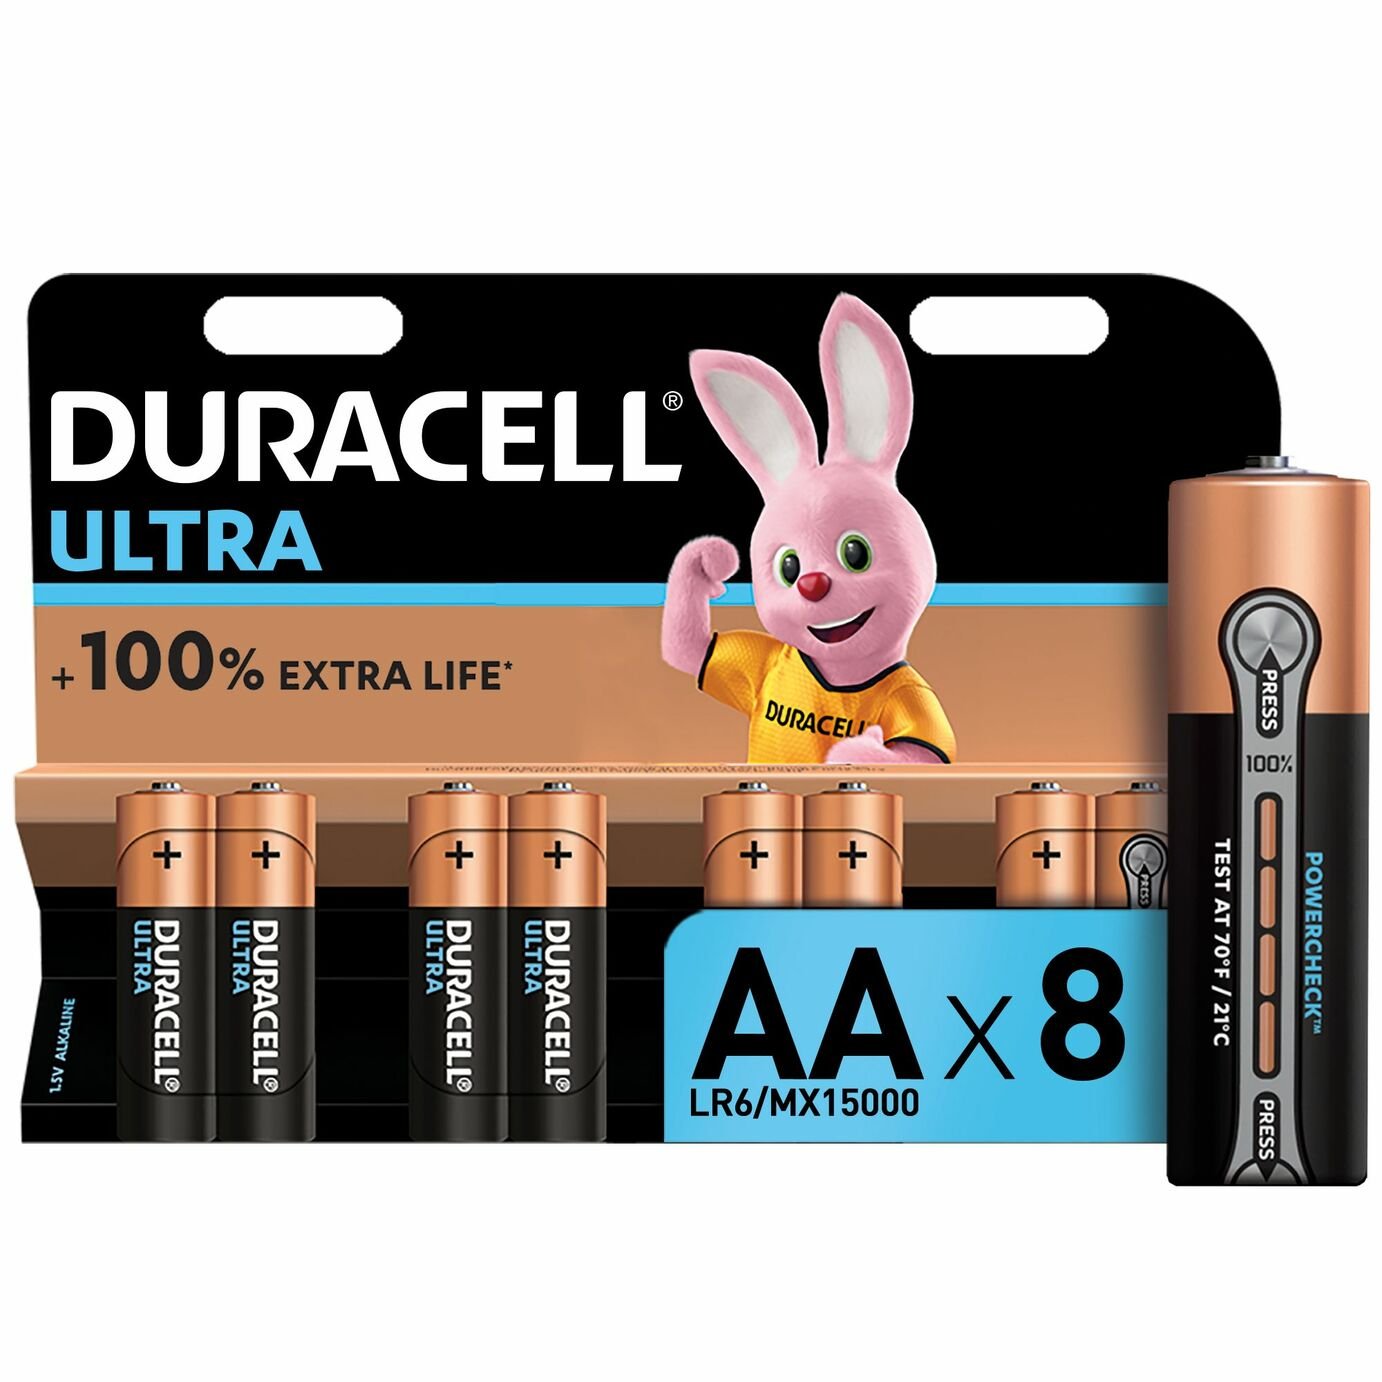 Duracell Ultra Alkaline AA Batteries Review